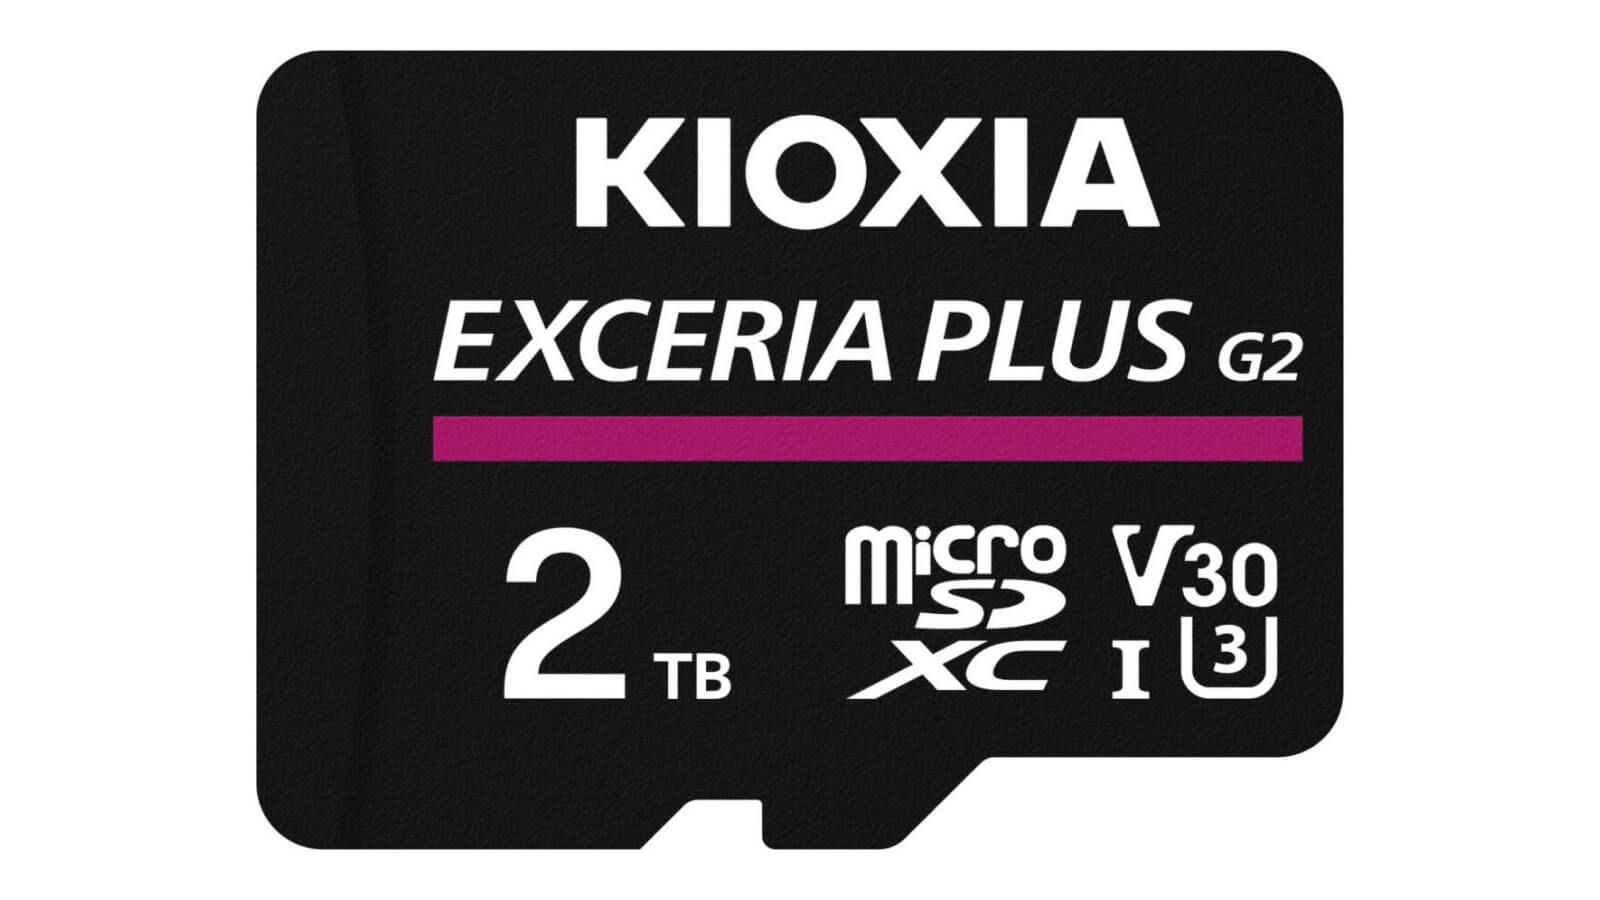 Exceria Plus G2 microSDXC